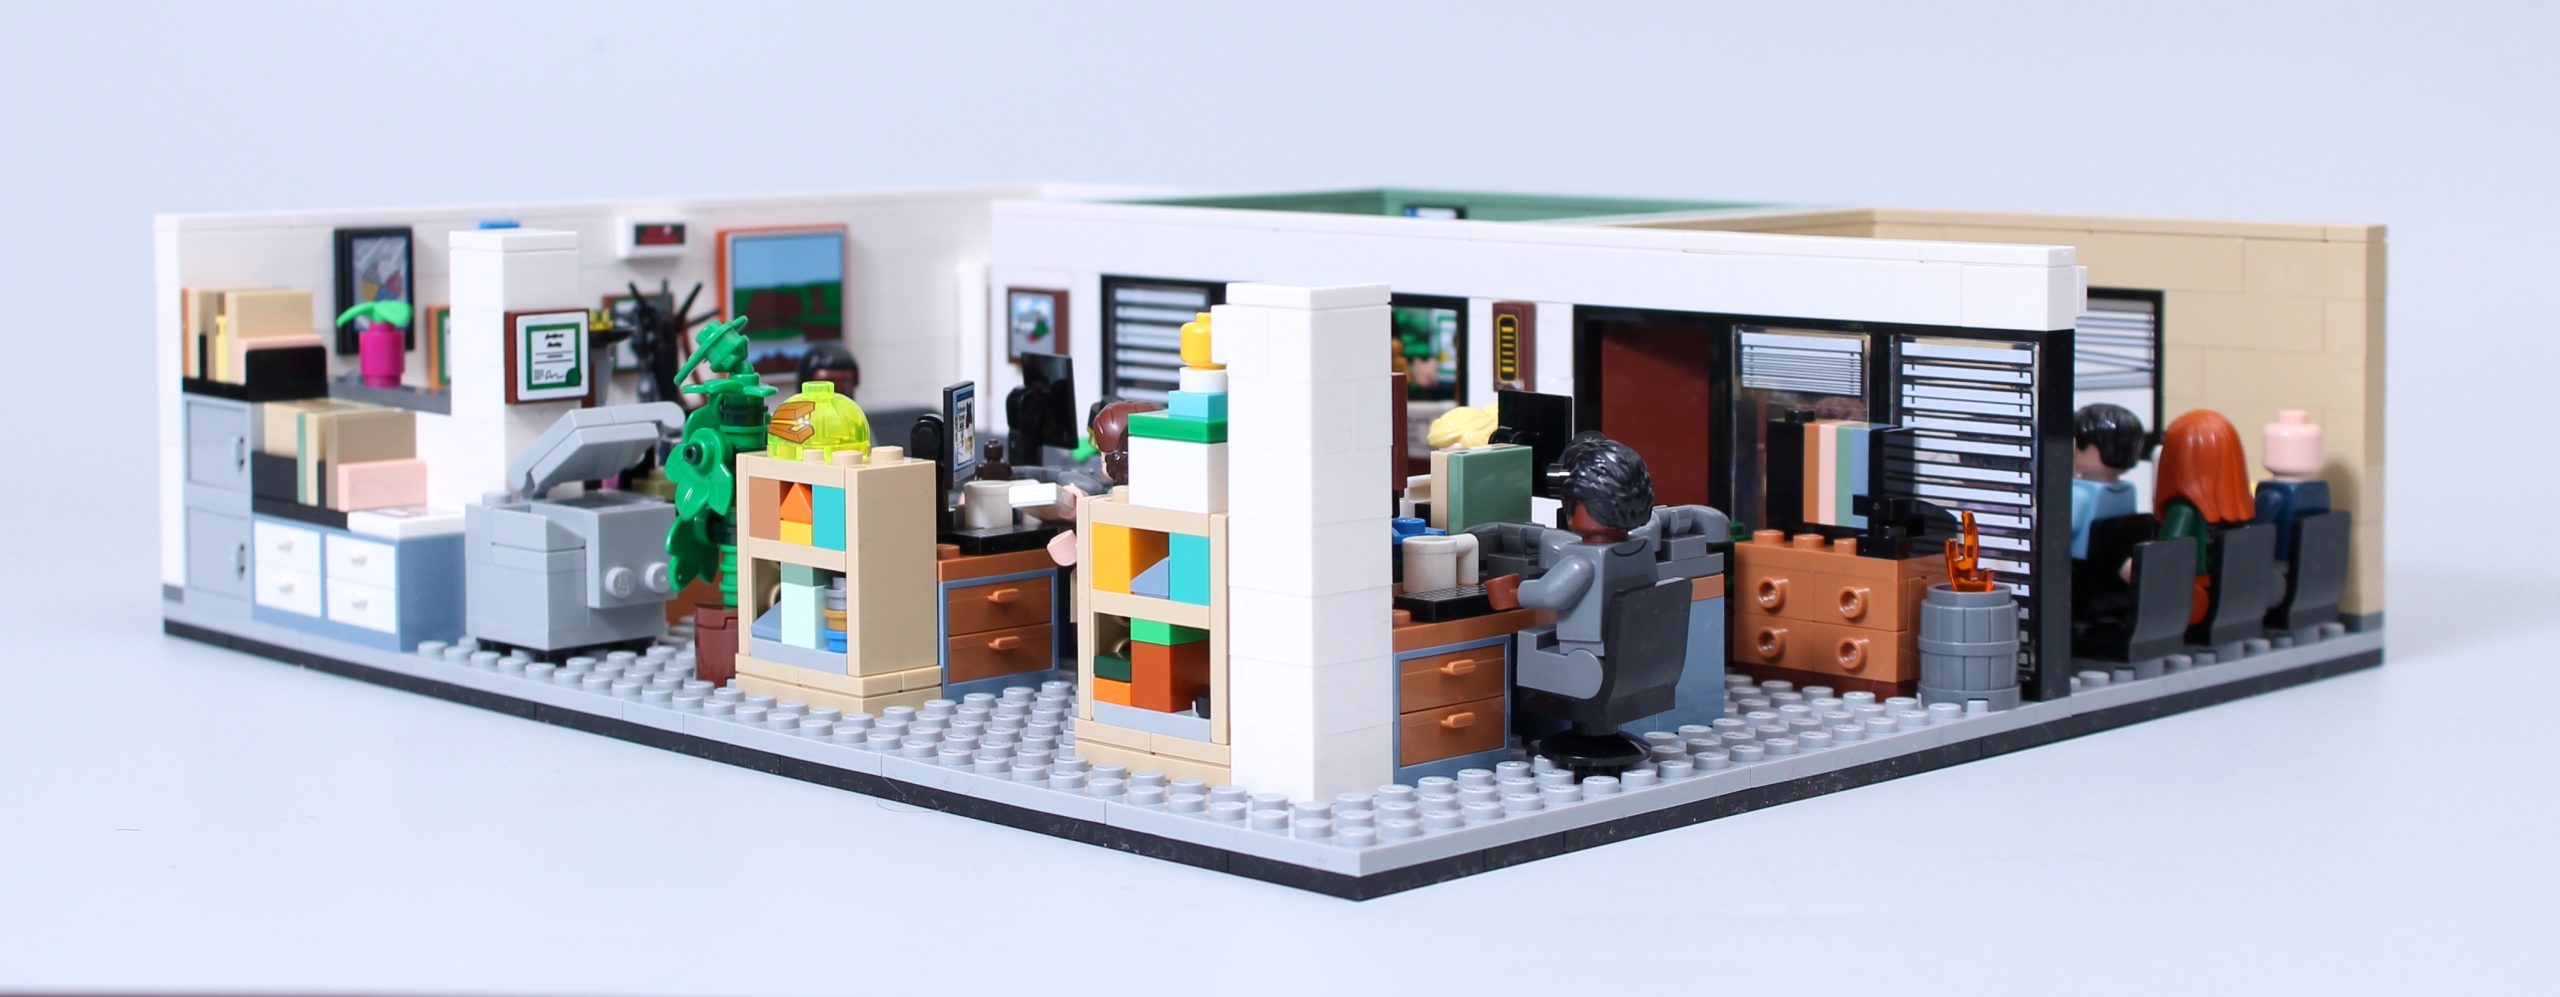 LEGO Ideas 21336 La référence Office laisse les fans perplexes